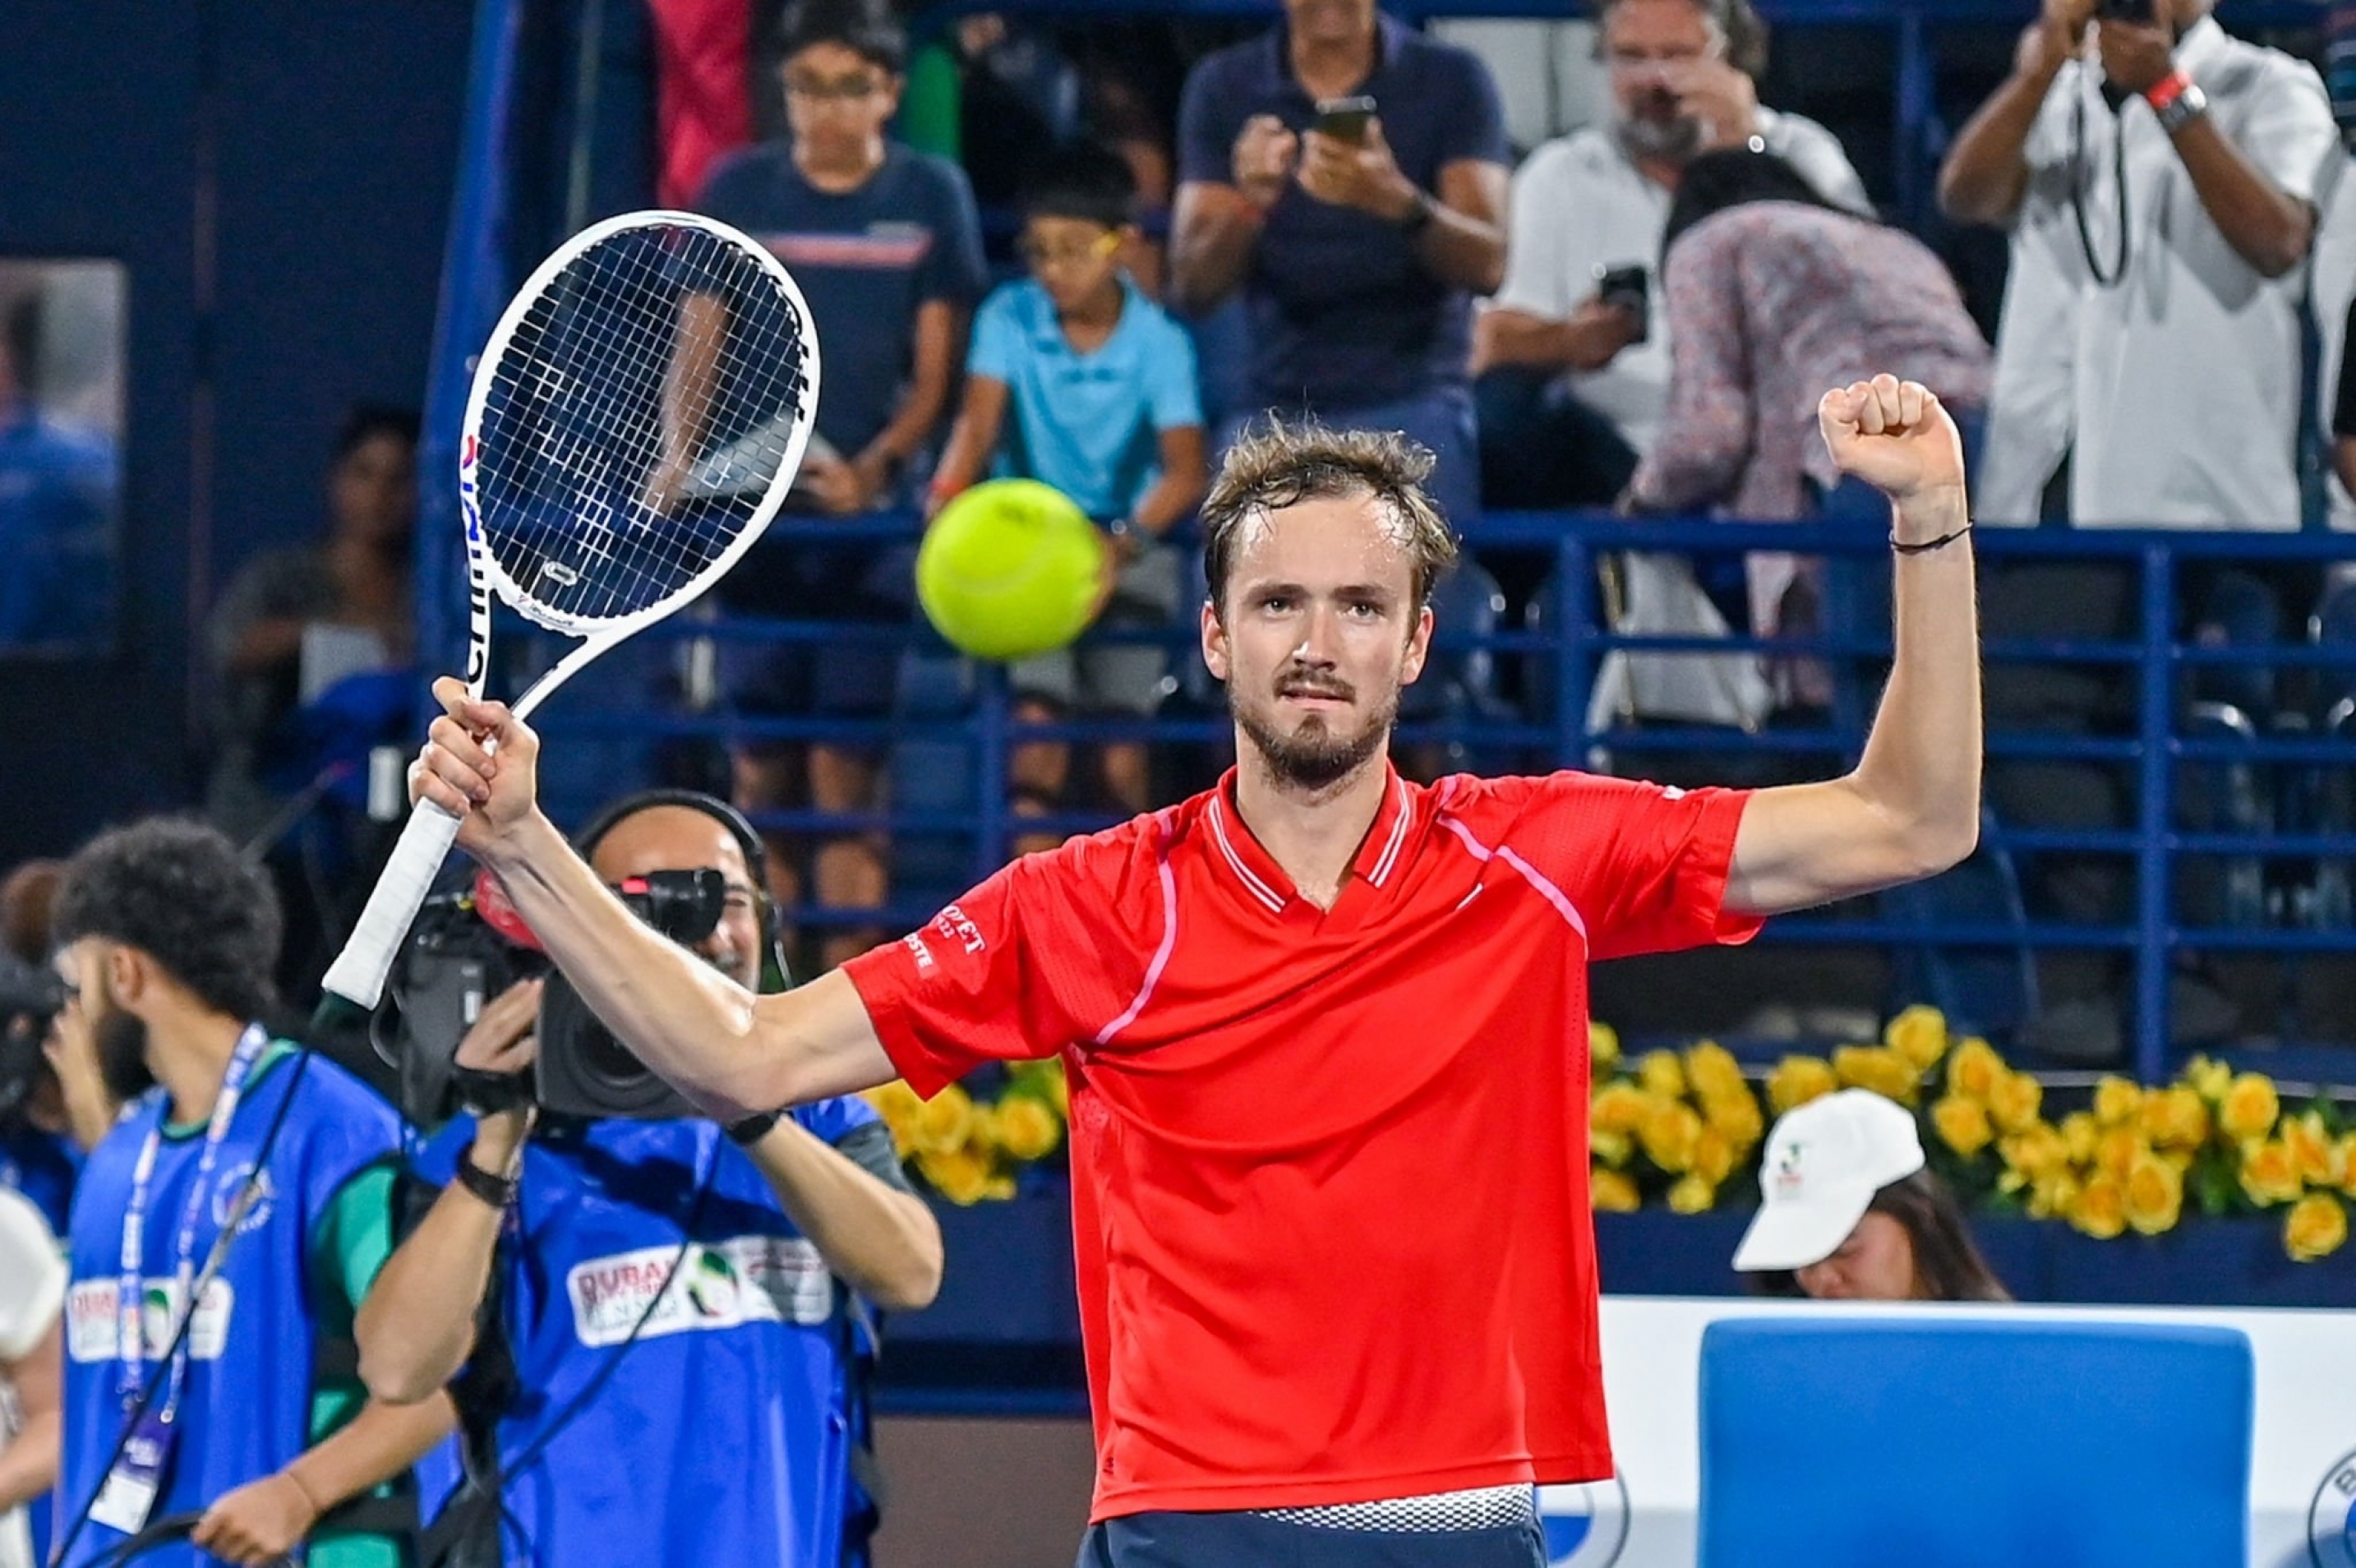 Sorotan Terbuka Dubai: Daniil Medvedev mengakhiri perjalanan Novak Djokovic untuk membukukan final Dubai bersama Rublev